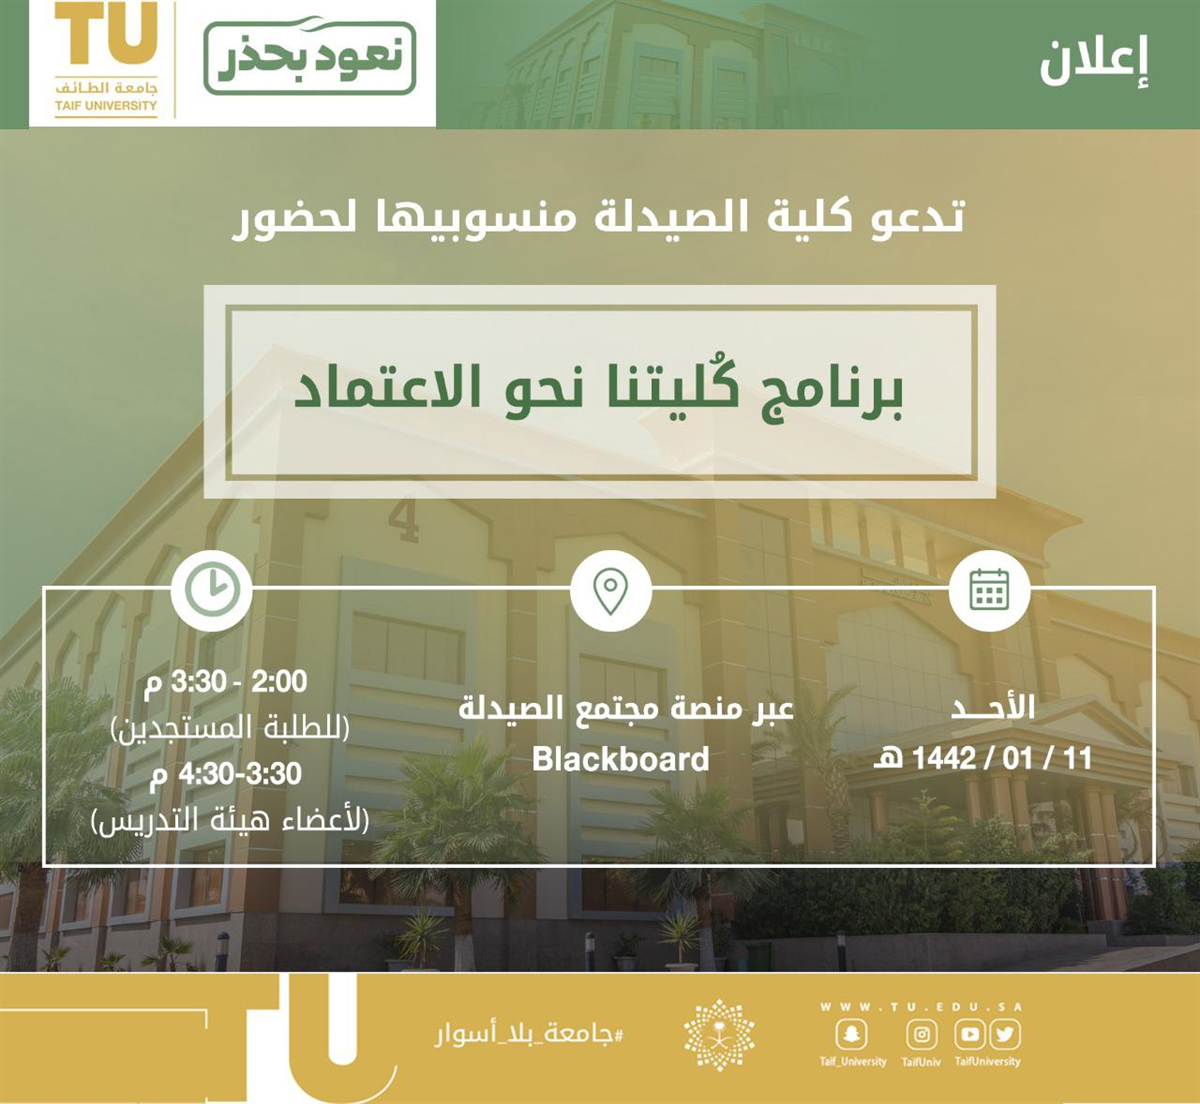 Taif University Advertisement